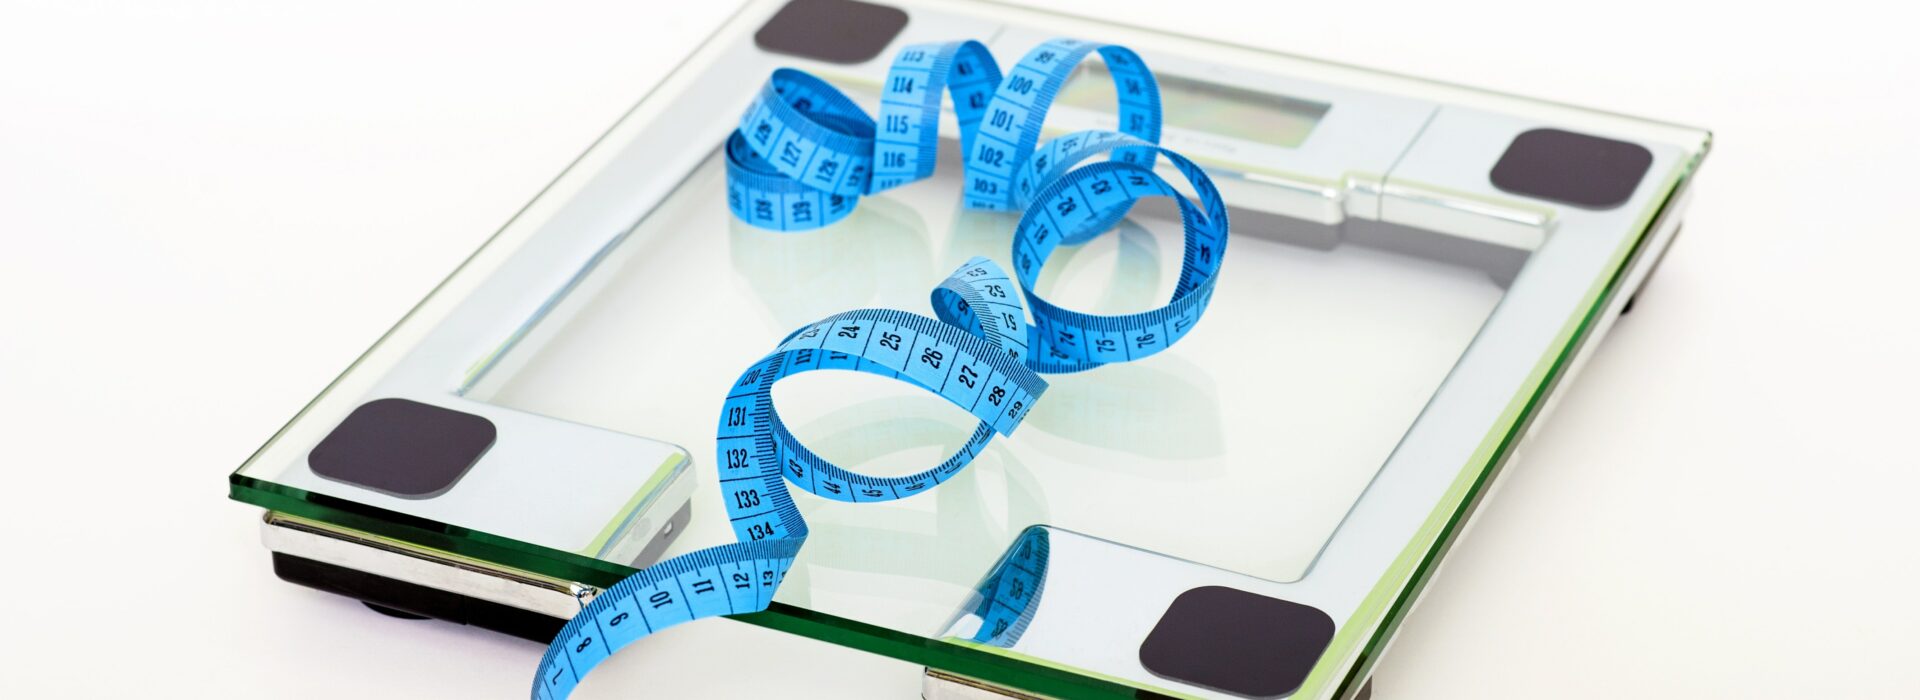 Váha je jedním z nástrojů jak sledovat změnu tělesné kompozice